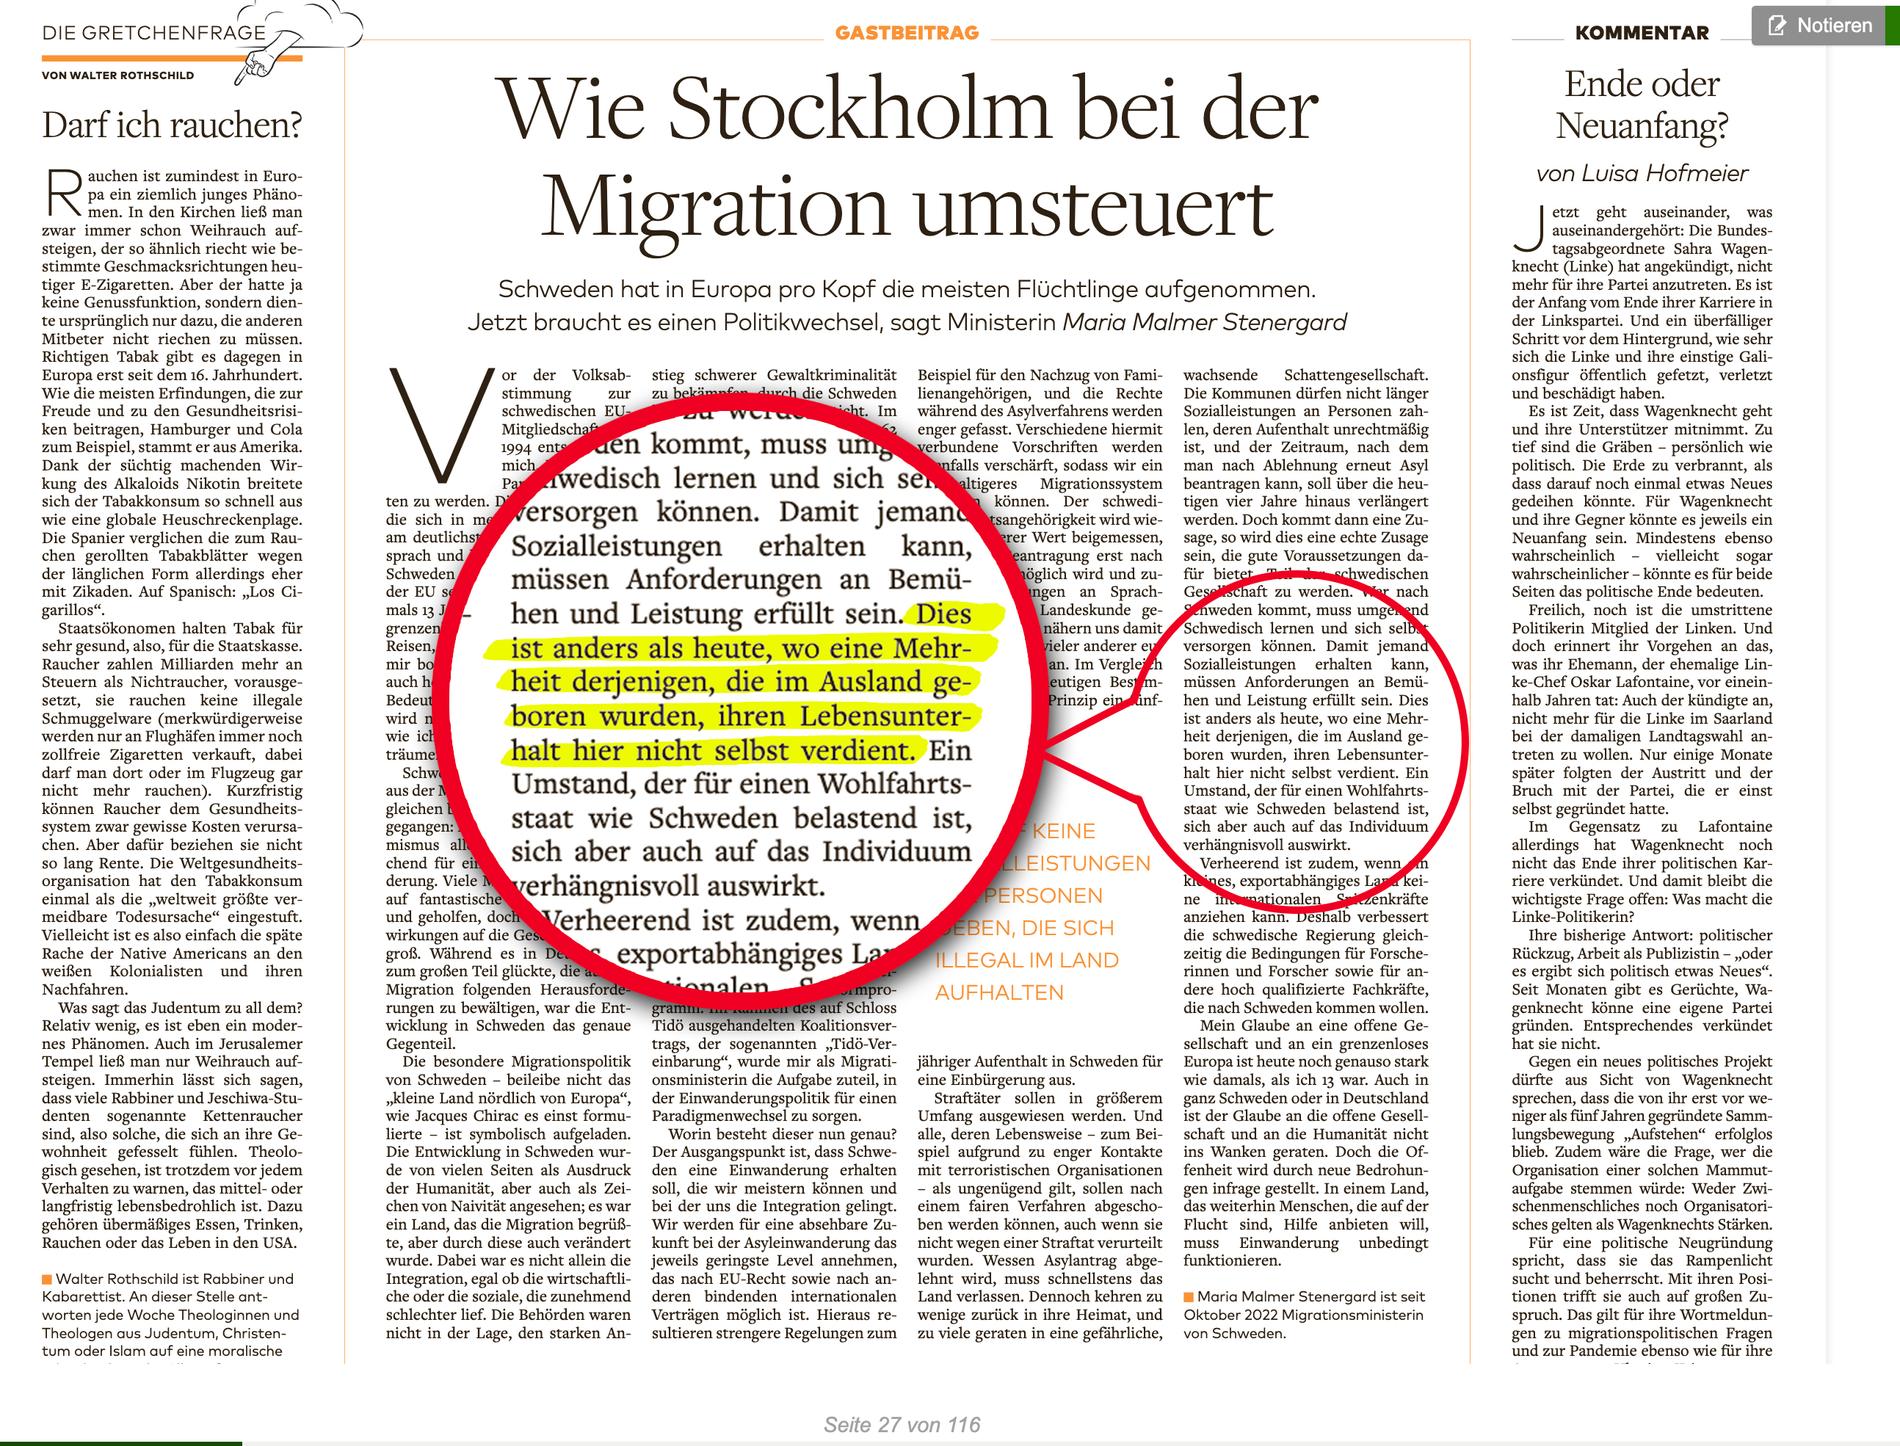 I artikeln beskriver migrationsministern hur högre krav ska ställas på invandrare. ”Till skillnad från idag  där en majoritet av de utrikes födda inte själva försörjer sig här” står det. 